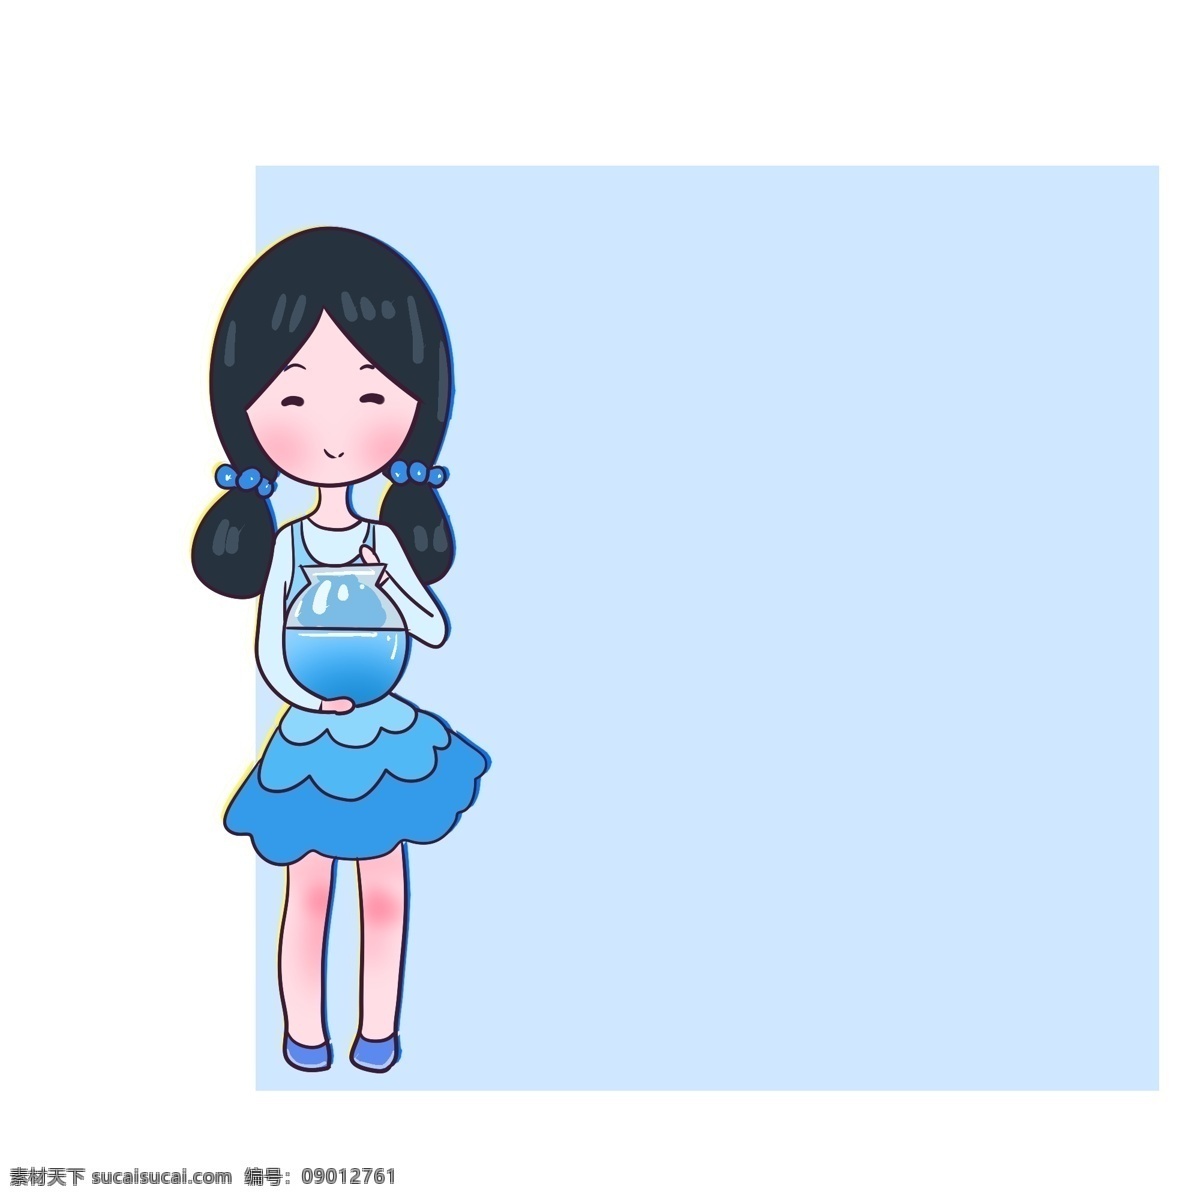 抱 鱼缸 女孩 蓝色 边框 蓝色方形边框 小女生边框 卡通小人 抱鱼缸女孩 穿蓝衣服女孩 可爱卡通女孩